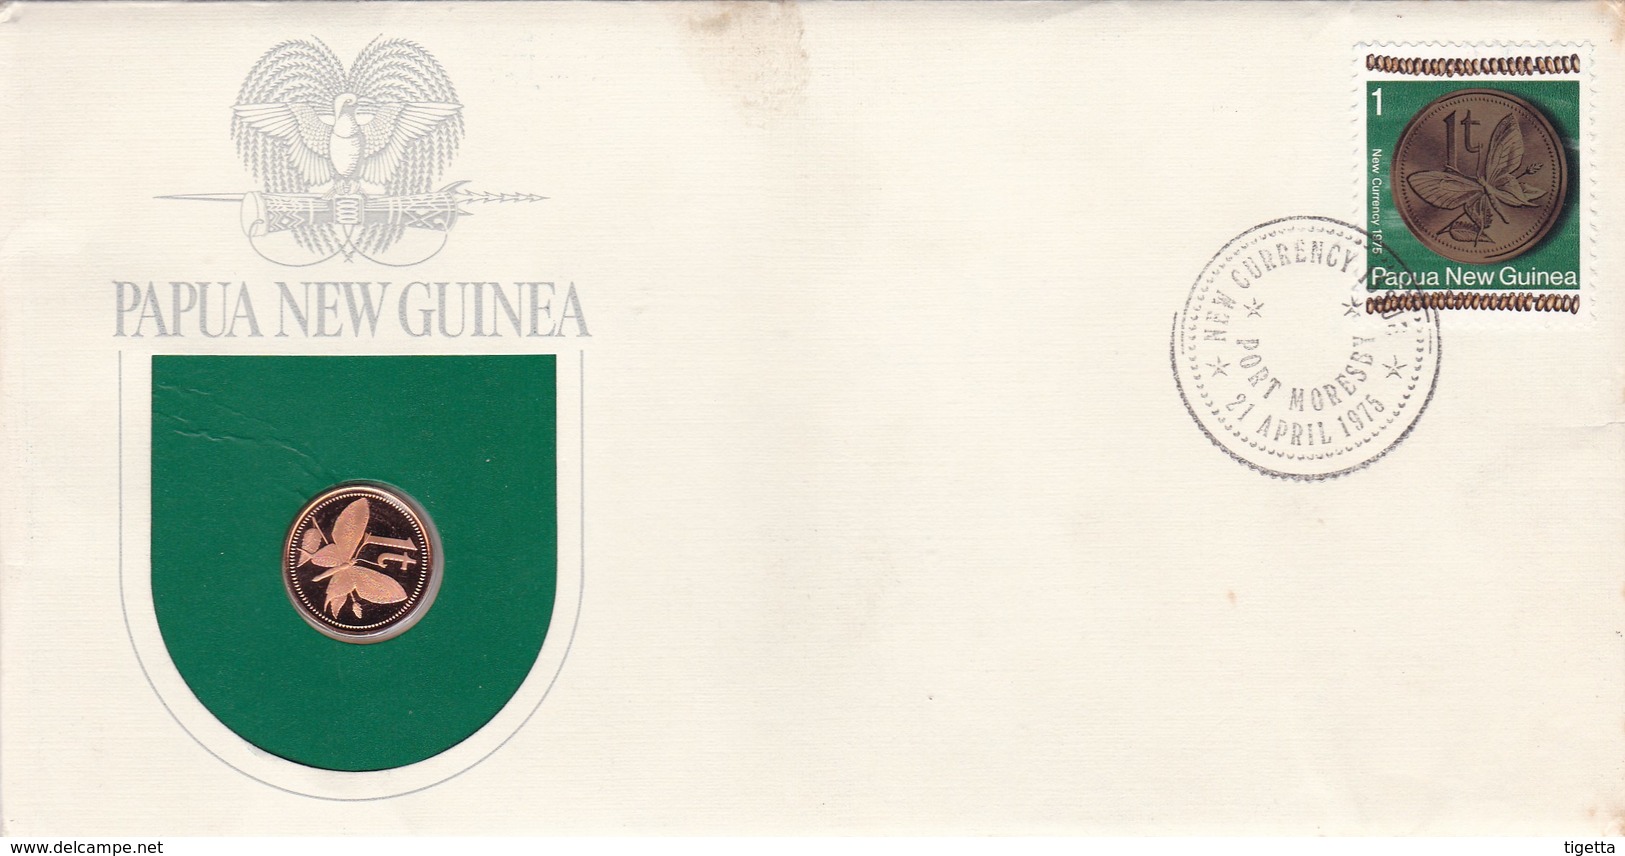 PAPUA NEW GUINEA SERIE MONETE CON ANNULLO PAPUA NUOVA GUINEA ANNO 1975 - Papua New Guinea